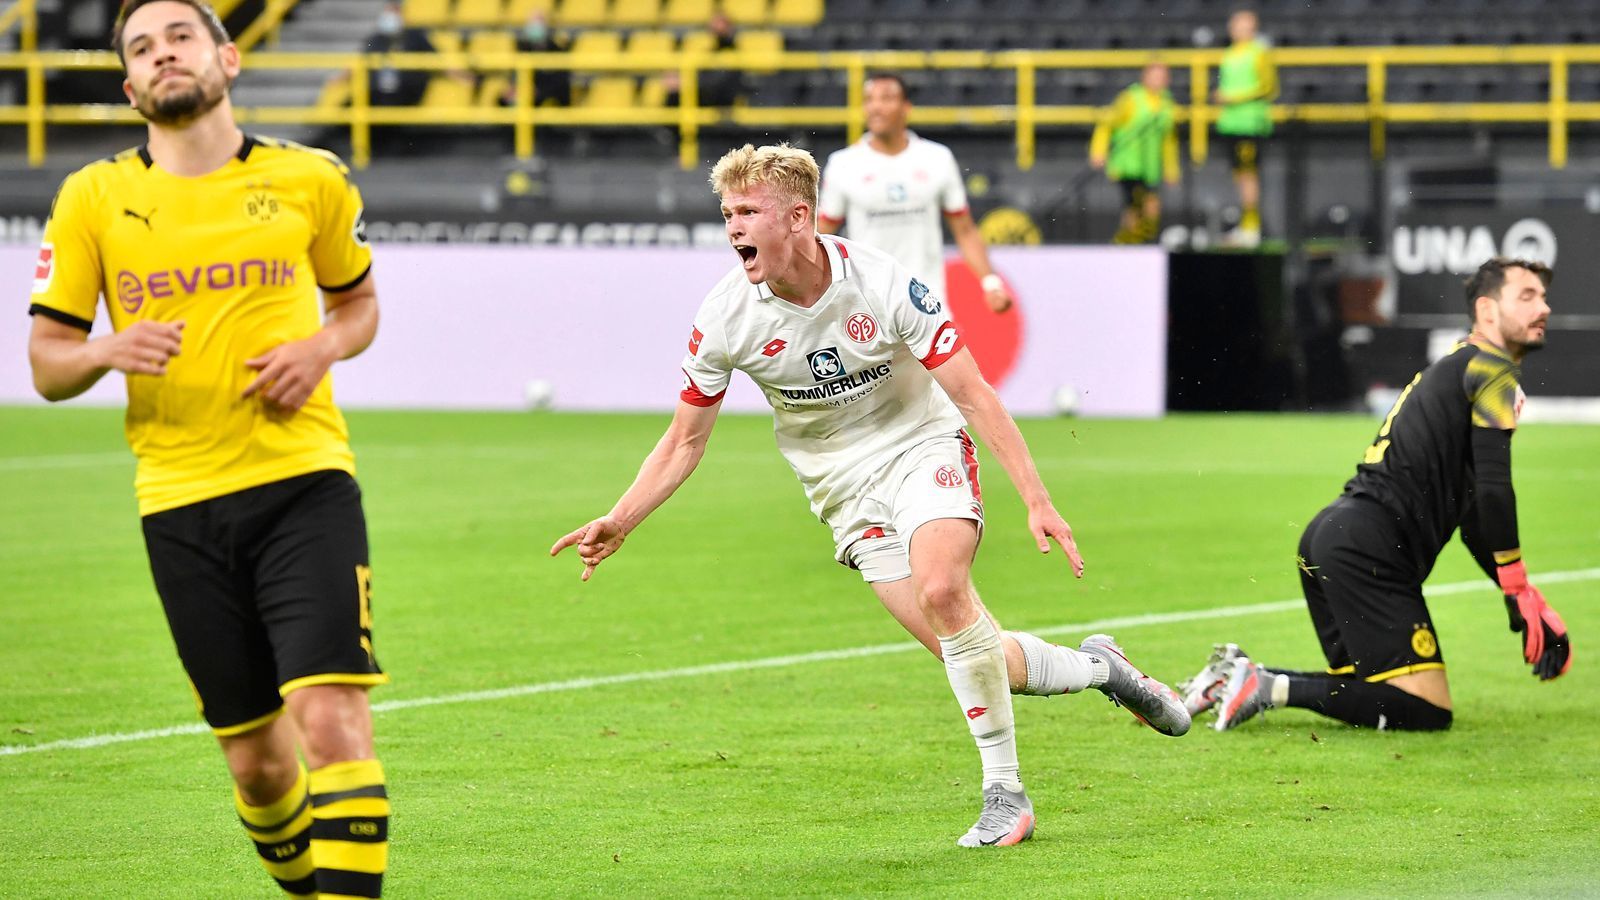 
                <strong>Jonathan Burkardt (1. FSV Mainz 05)</strong><br>
                Der Mainzer Stürmer Jonathan Burkardt ist quasi der Gegenentwurf zu Jakobs, denn der 20-Jährige ist schon in den letzten Jahren in den U-Mannschaften des DFB ein Dauergast gewesen. Von der U15 an kam Burkhardt für alle DFB-Auswahlmannschaften zum Einsatz, ist nun eben auch erstmals in der U21 mit dabei. Der gebürtige Darmstädter kam in der Bundesliga-Saison 2019/20 immerhin zu acht Einsätzen für den FSV, nachdem er sein Debüt in Deutschlands höchster Spielklasse bereits in der Spielzeit 2018/19 gab. Beim 2:0-Sieg der Mainzer in Dortmund, gelang Burkhardt zuletzt am 30. Spieltag sein erstes Bundesliga-Tor im zwölften Einsatz.
              